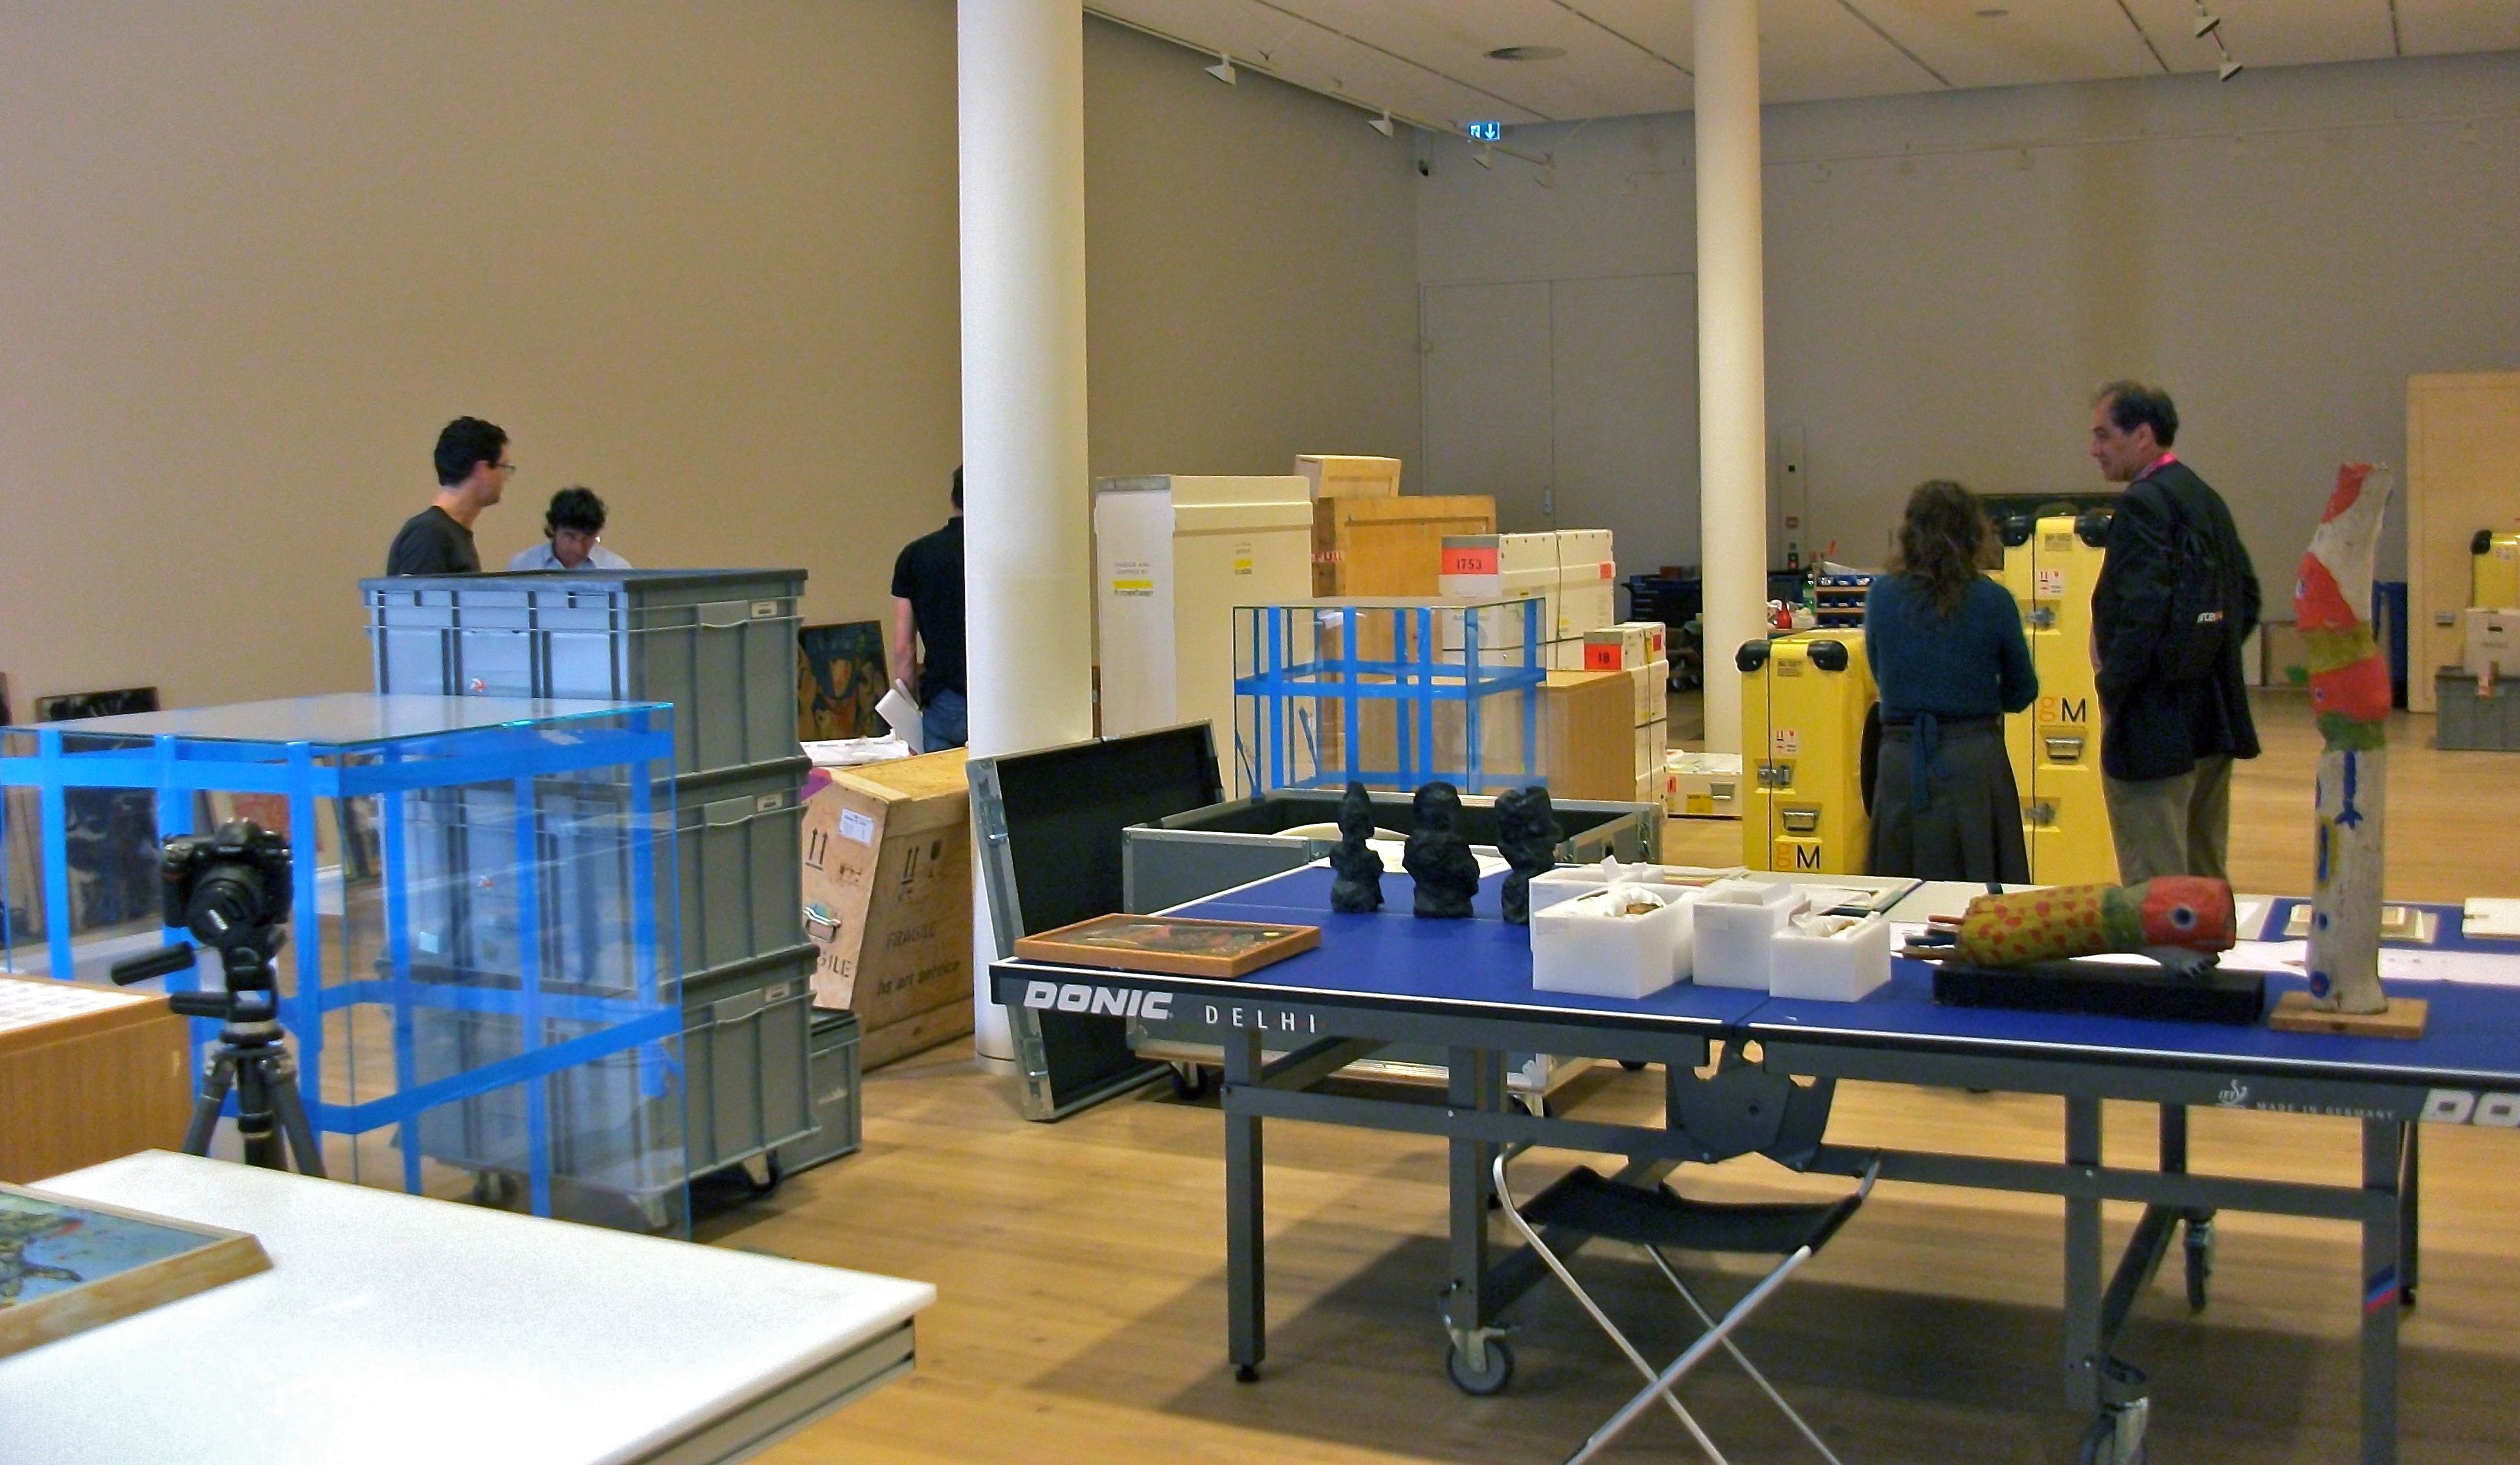 Exhibition installation, crates transit storage